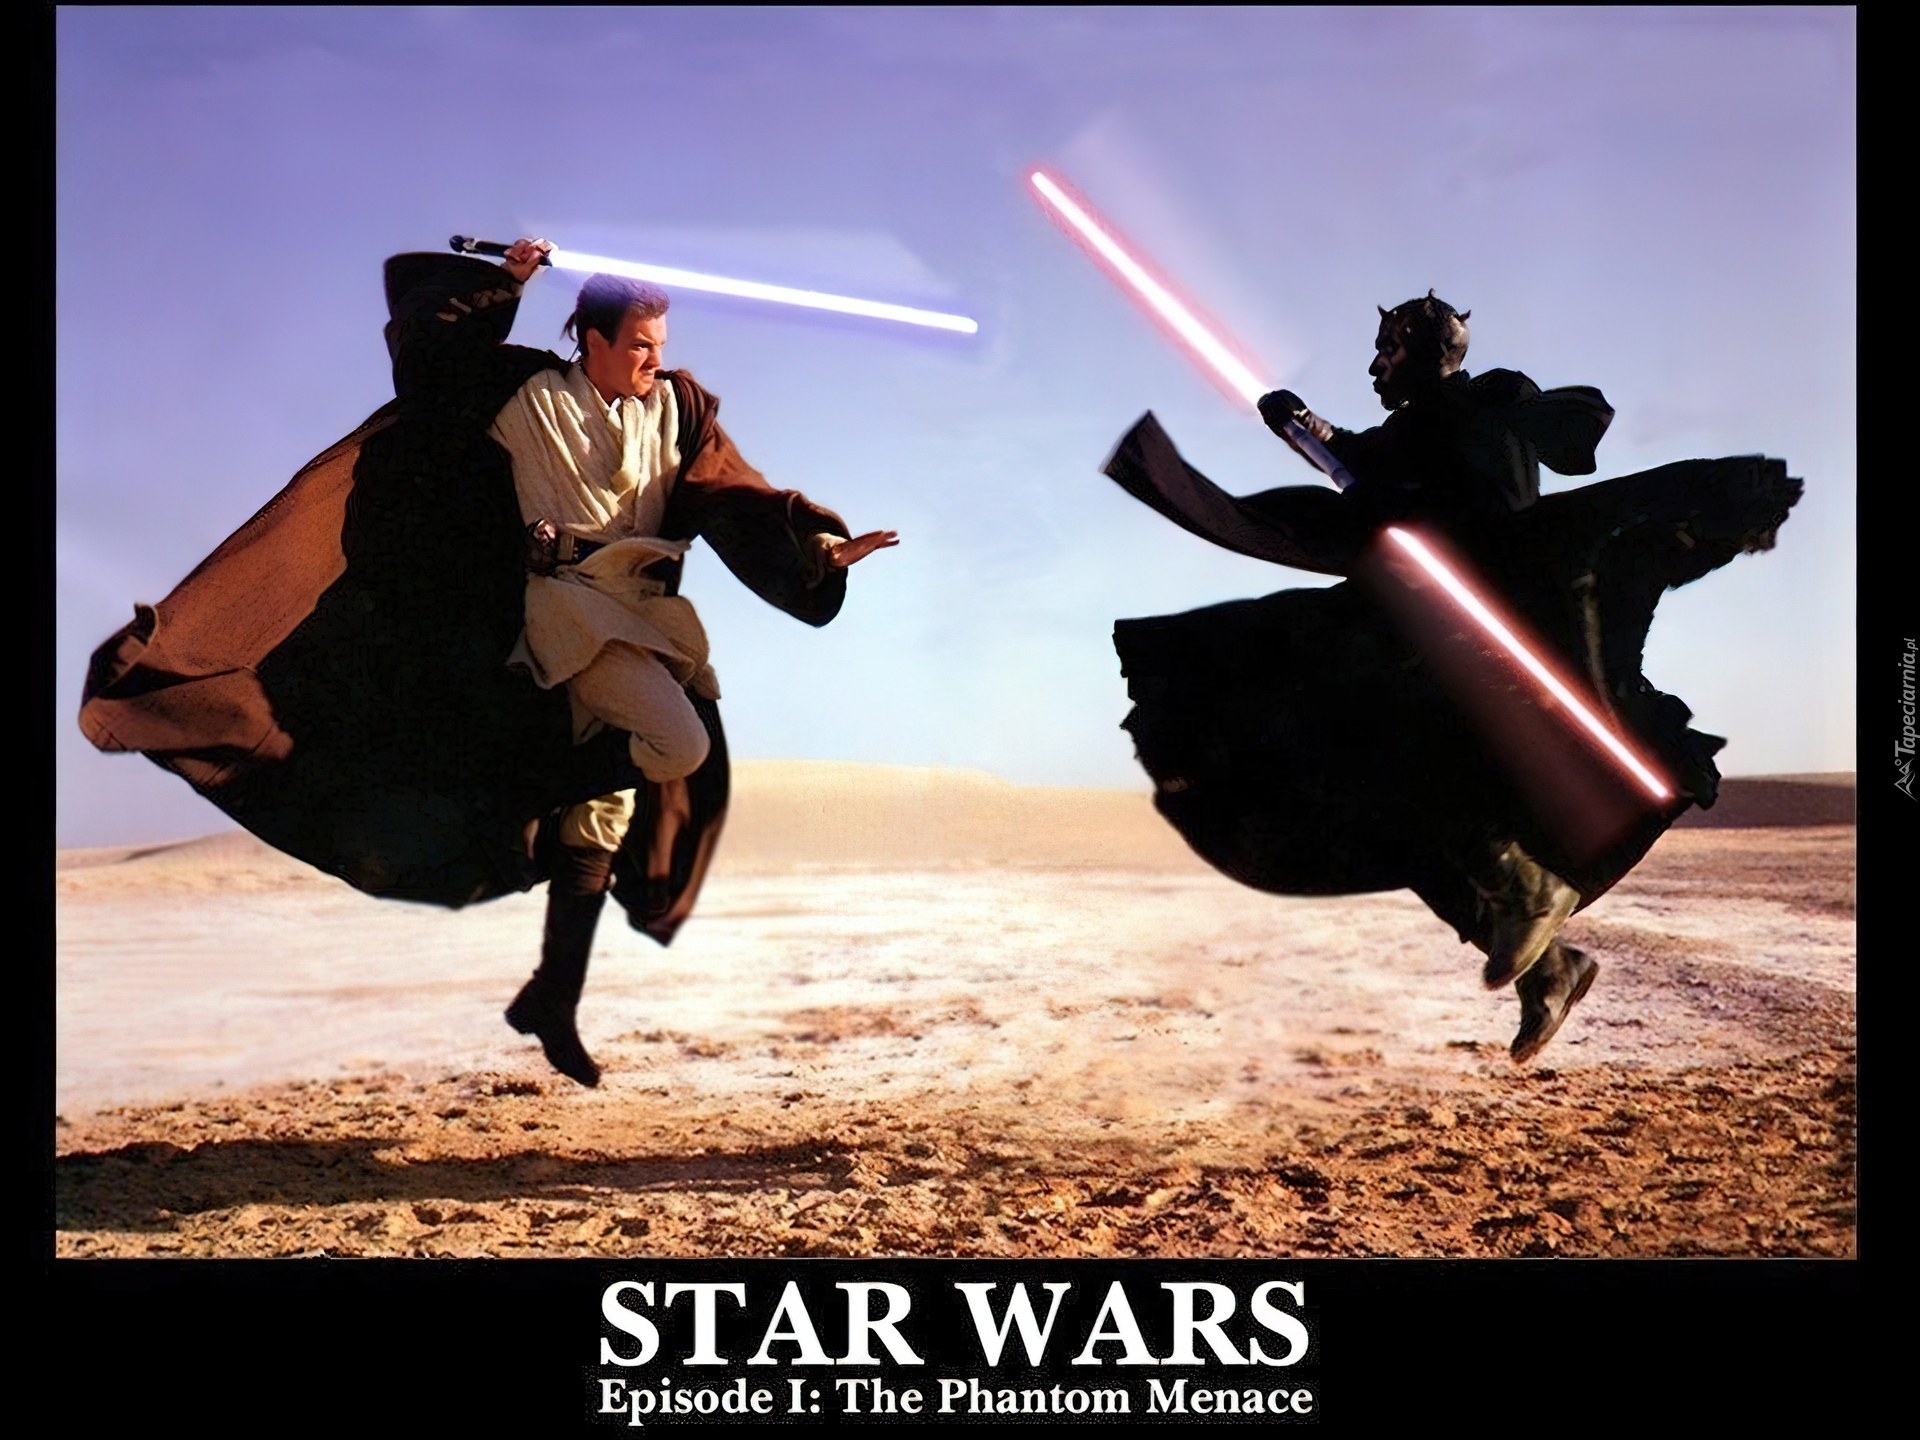 Gwiezdne wojny część I Mroczne widmo, Star Wars Episode I The Phantom Menace